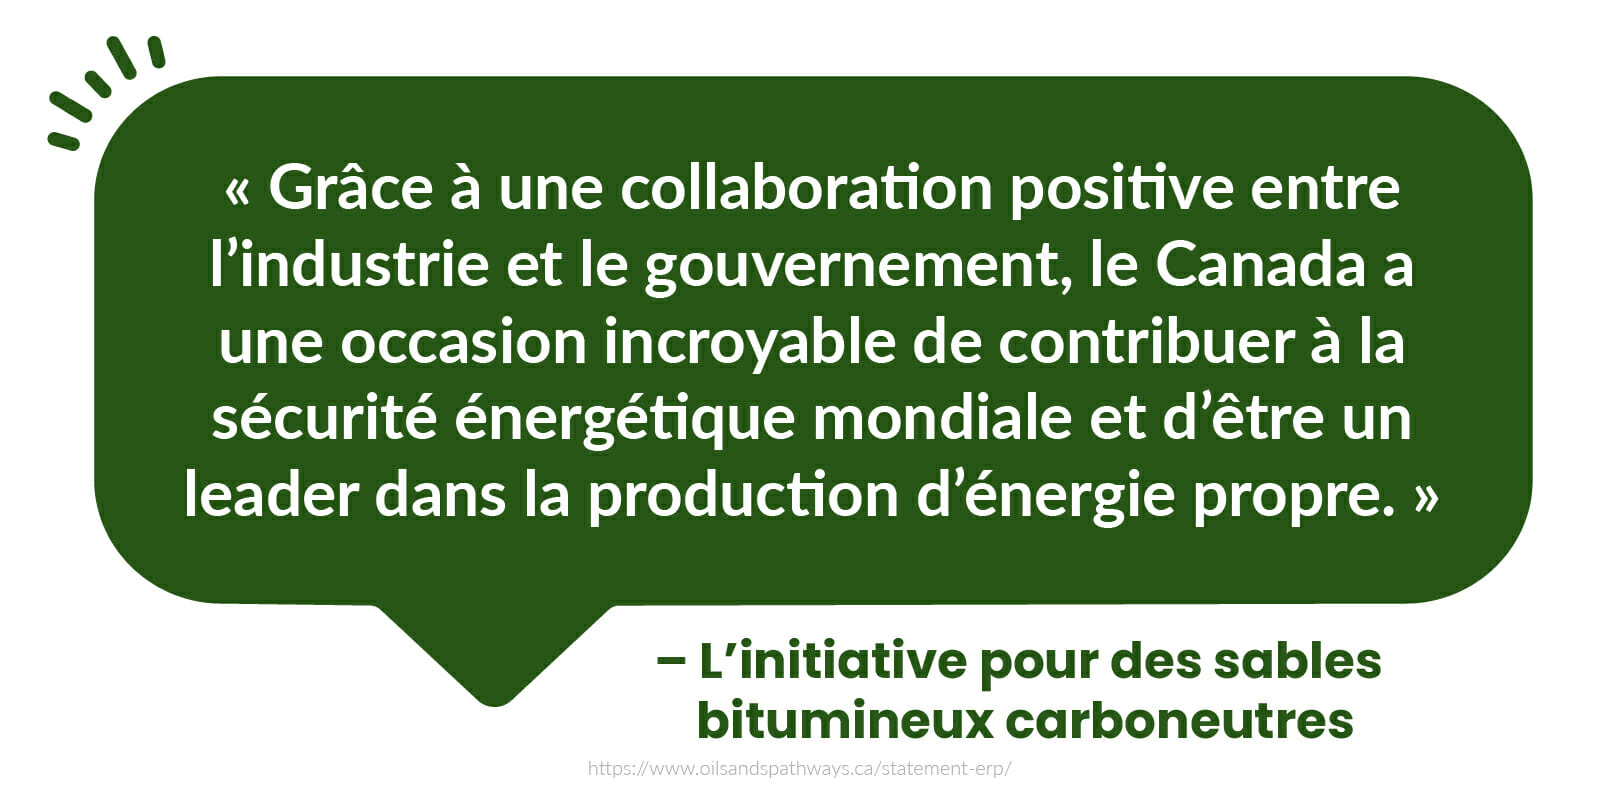  « Grâce à une collaboration positive entre l’industrie et le gouvernement, le Canada a une occasion incroyable de contribuer à la sécurité énergétique mondiale et d’être un leader dans la production d’énergie propre. » - L’initiative pour des sables bitumineux carboneutres